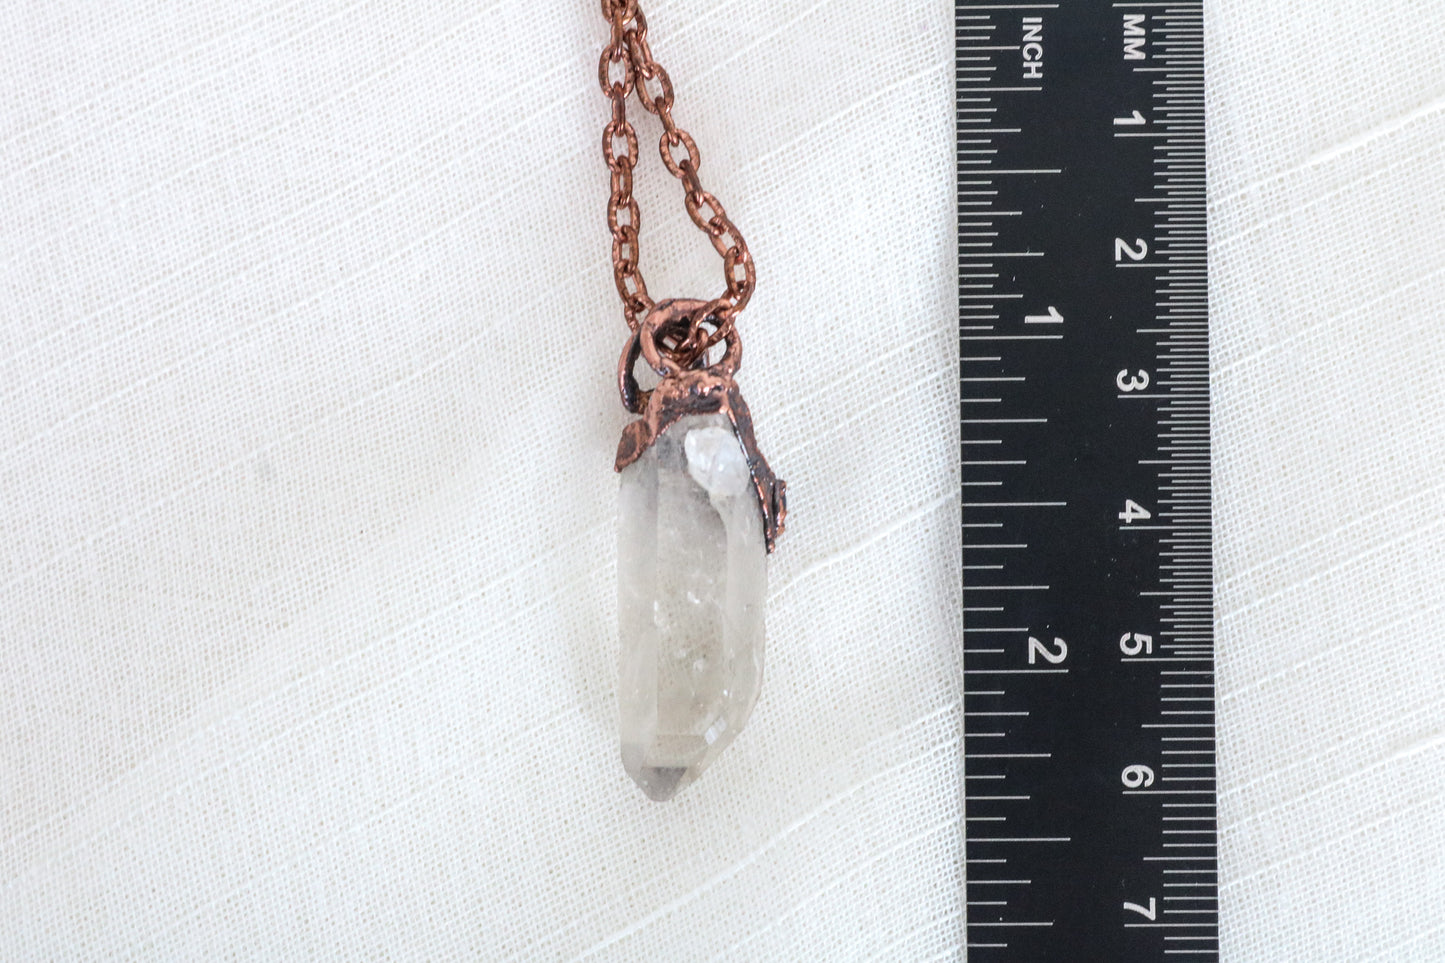 Clear Quartz & Sapphire Necklace